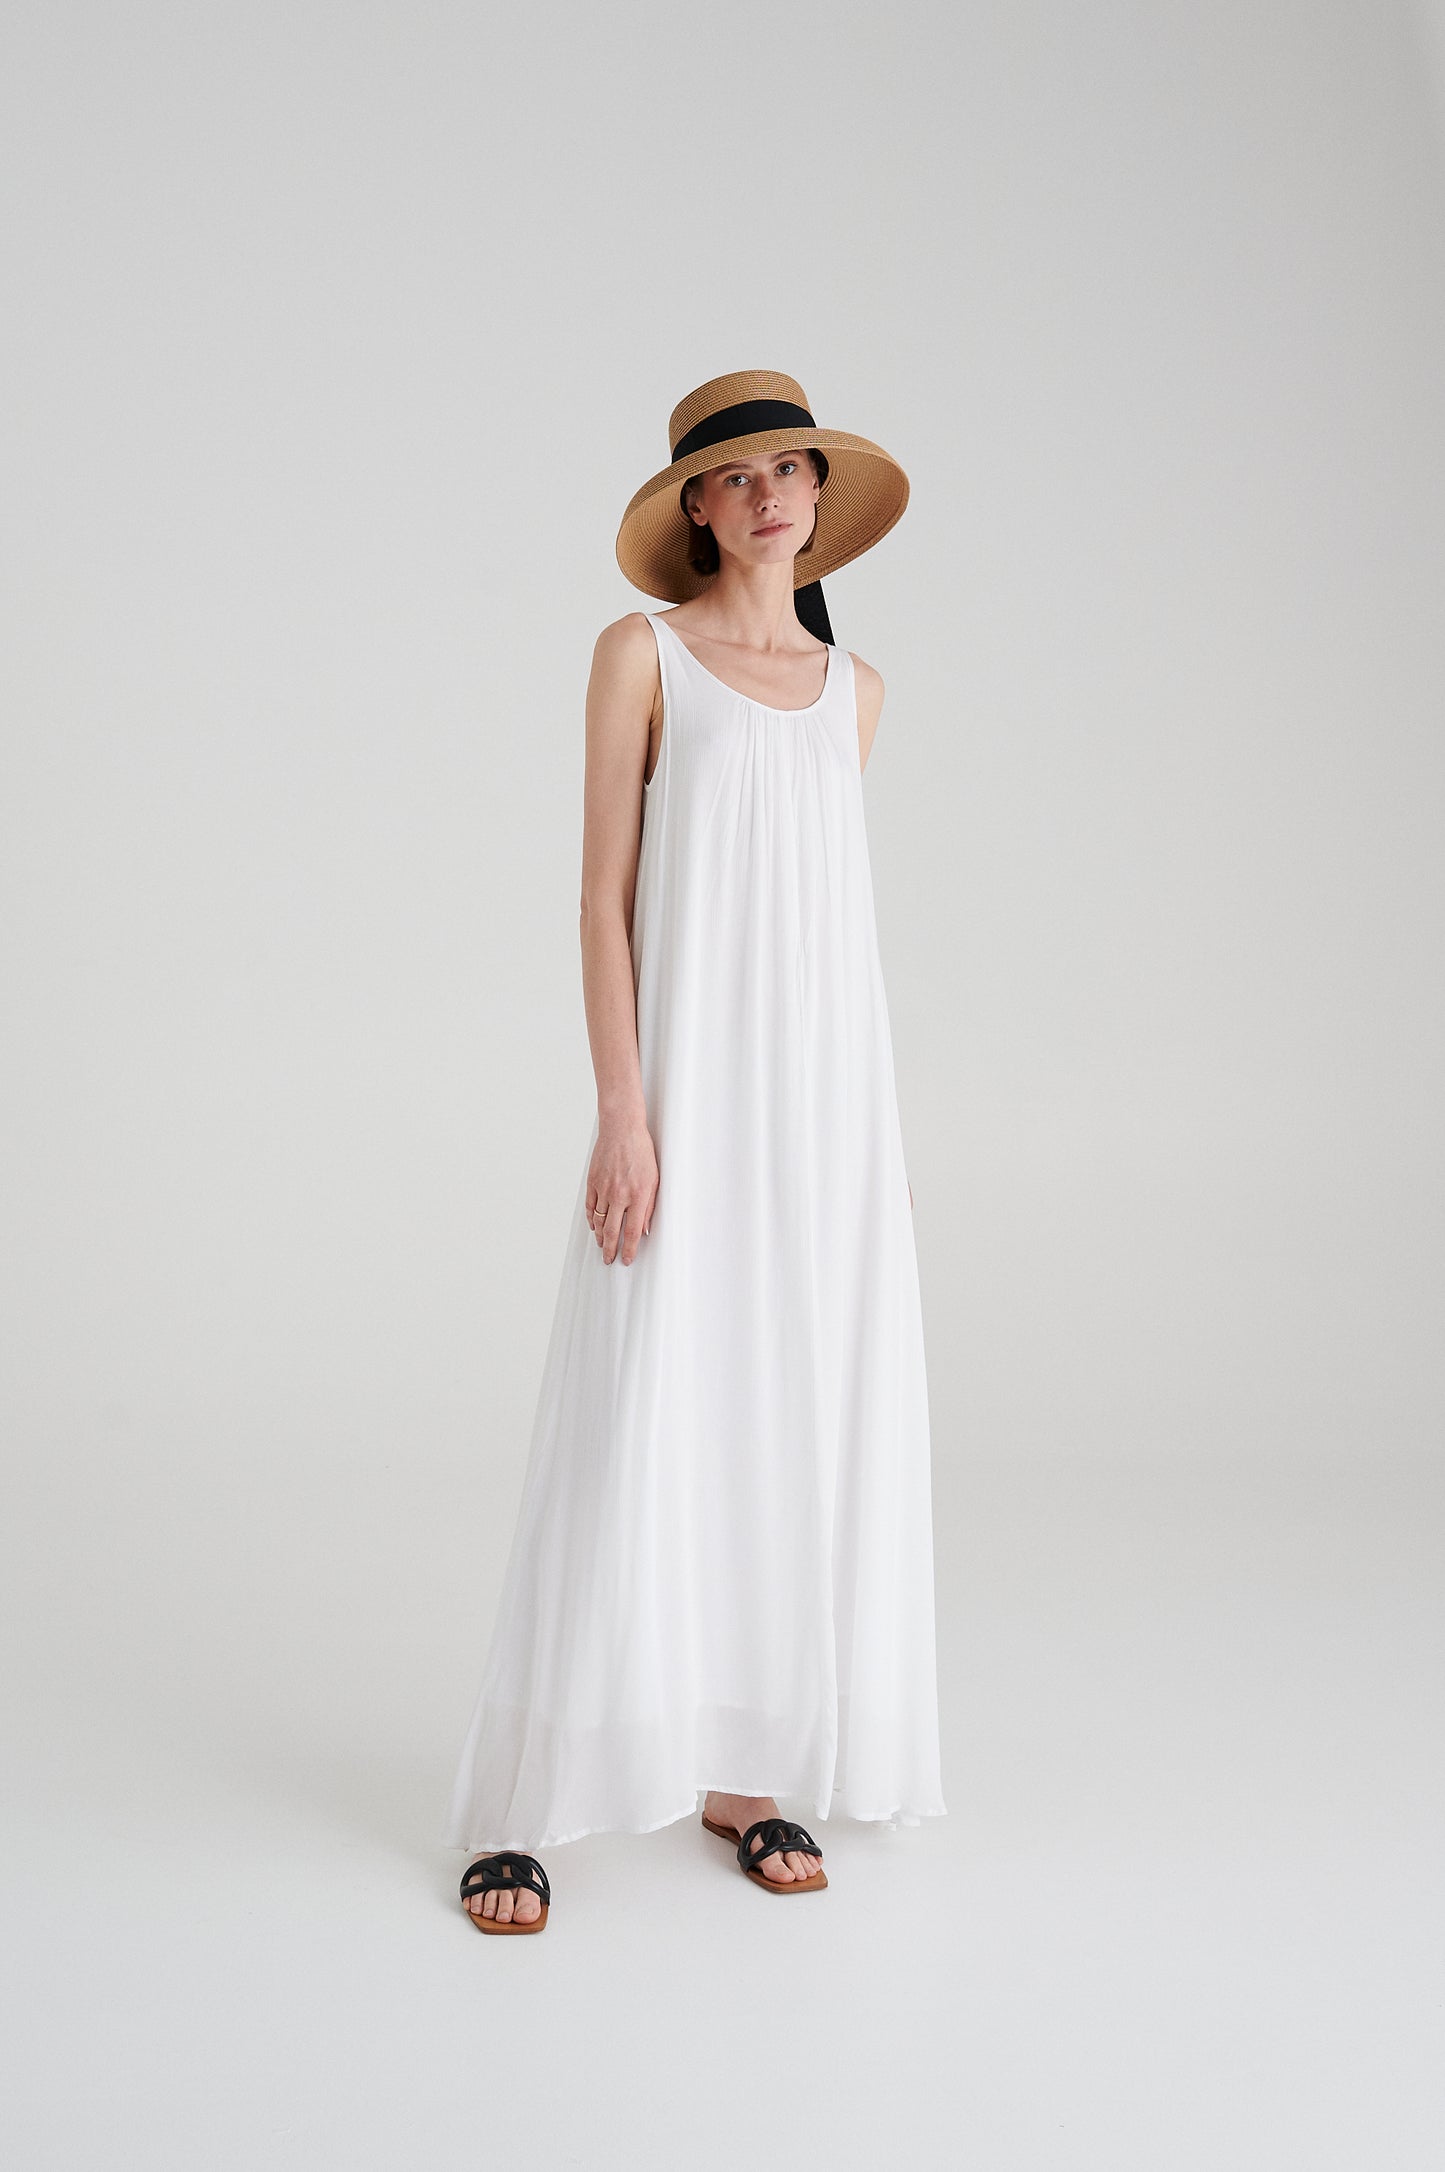 MADRESS | WHITE LONG CHIFFON DRESS